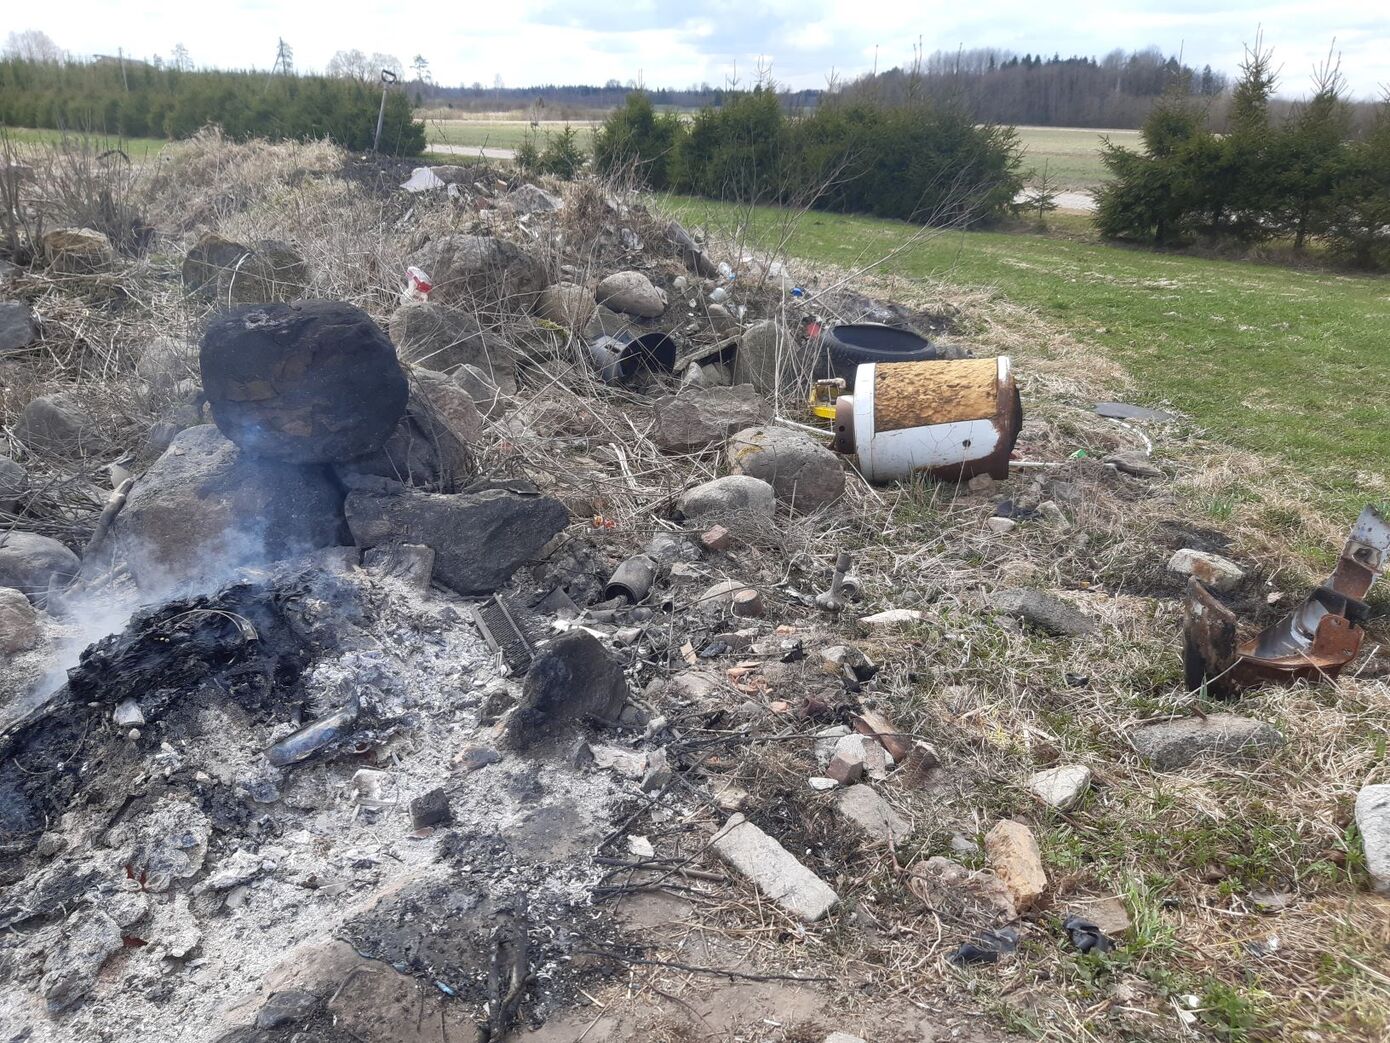 23. aprillil kella 13.45 ajal avastasid patrullivad päästjad Põhja-Sakala vallas Ängi külas lõkke, milles elanikud kaltse ja muud prügi põletasid.